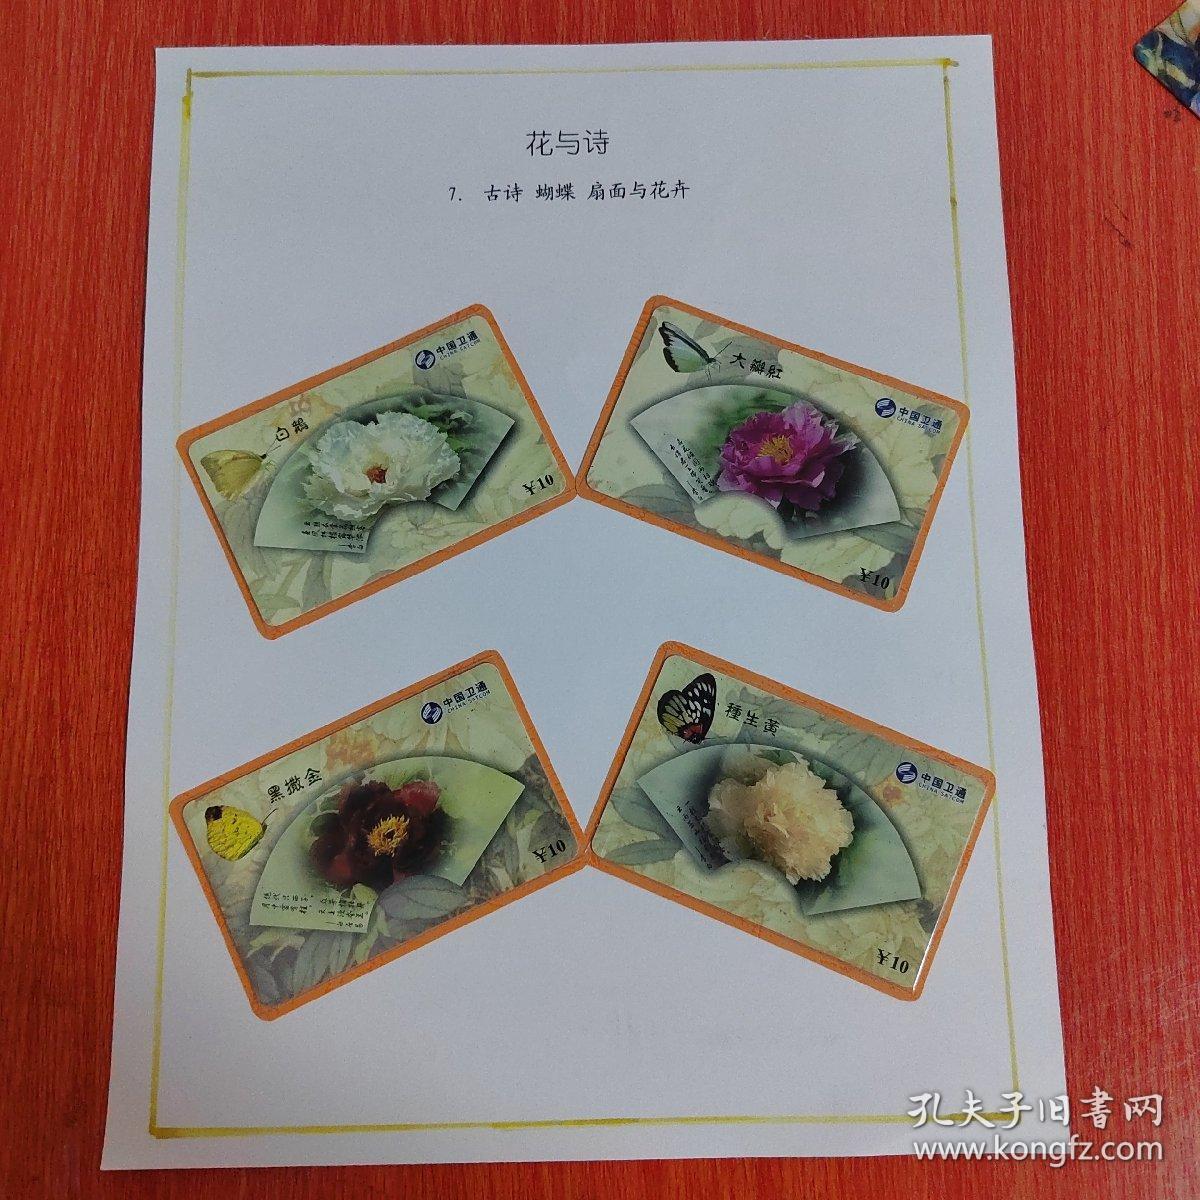 电话卡——中国卫通电话卡     4枚/组    花与诗   古诗蝴蝶  扇面与花卉    白鹅    大瓣红    黑撒金   種生黄